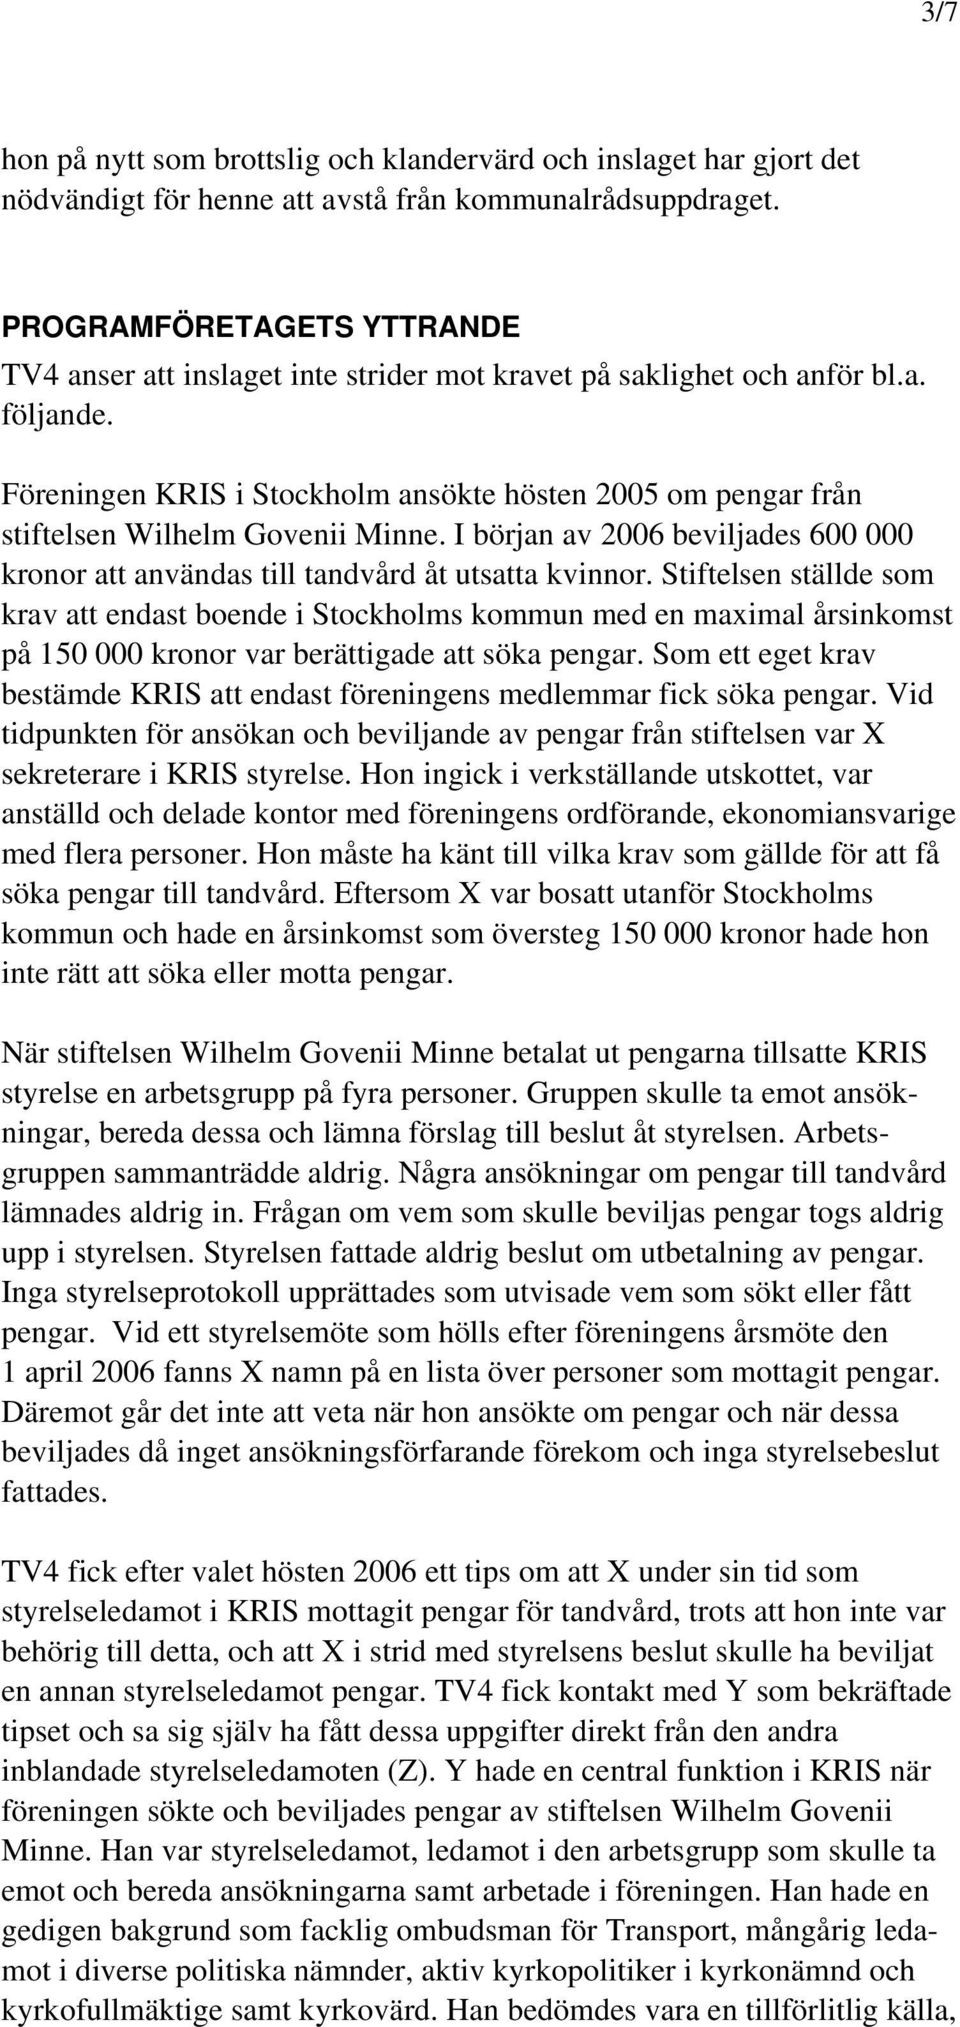 Föreningen KRIS i Stockholm ansökte hösten 2005 om pengar från stiftelsen Wilhelm Govenii Minne. I början av 2006 beviljades 600 000 kronor att användas till tandvård åt utsatta kvinnor.